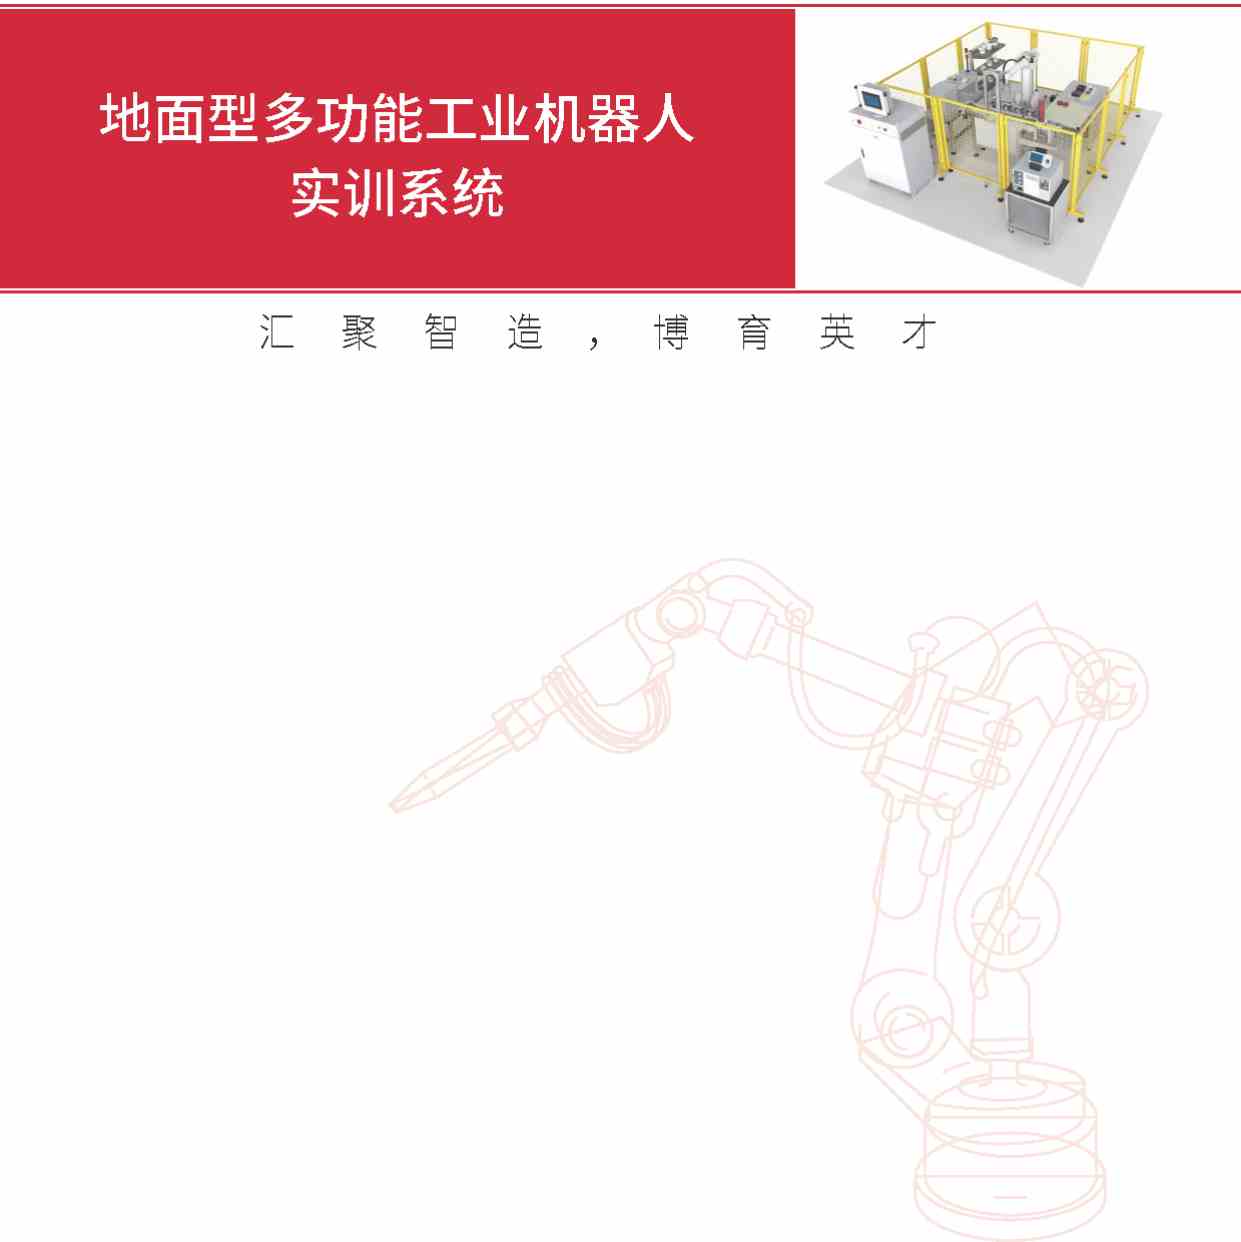 佛山南庄（今日更新）ABB焊接机器人就业培训班top3排名名单一览